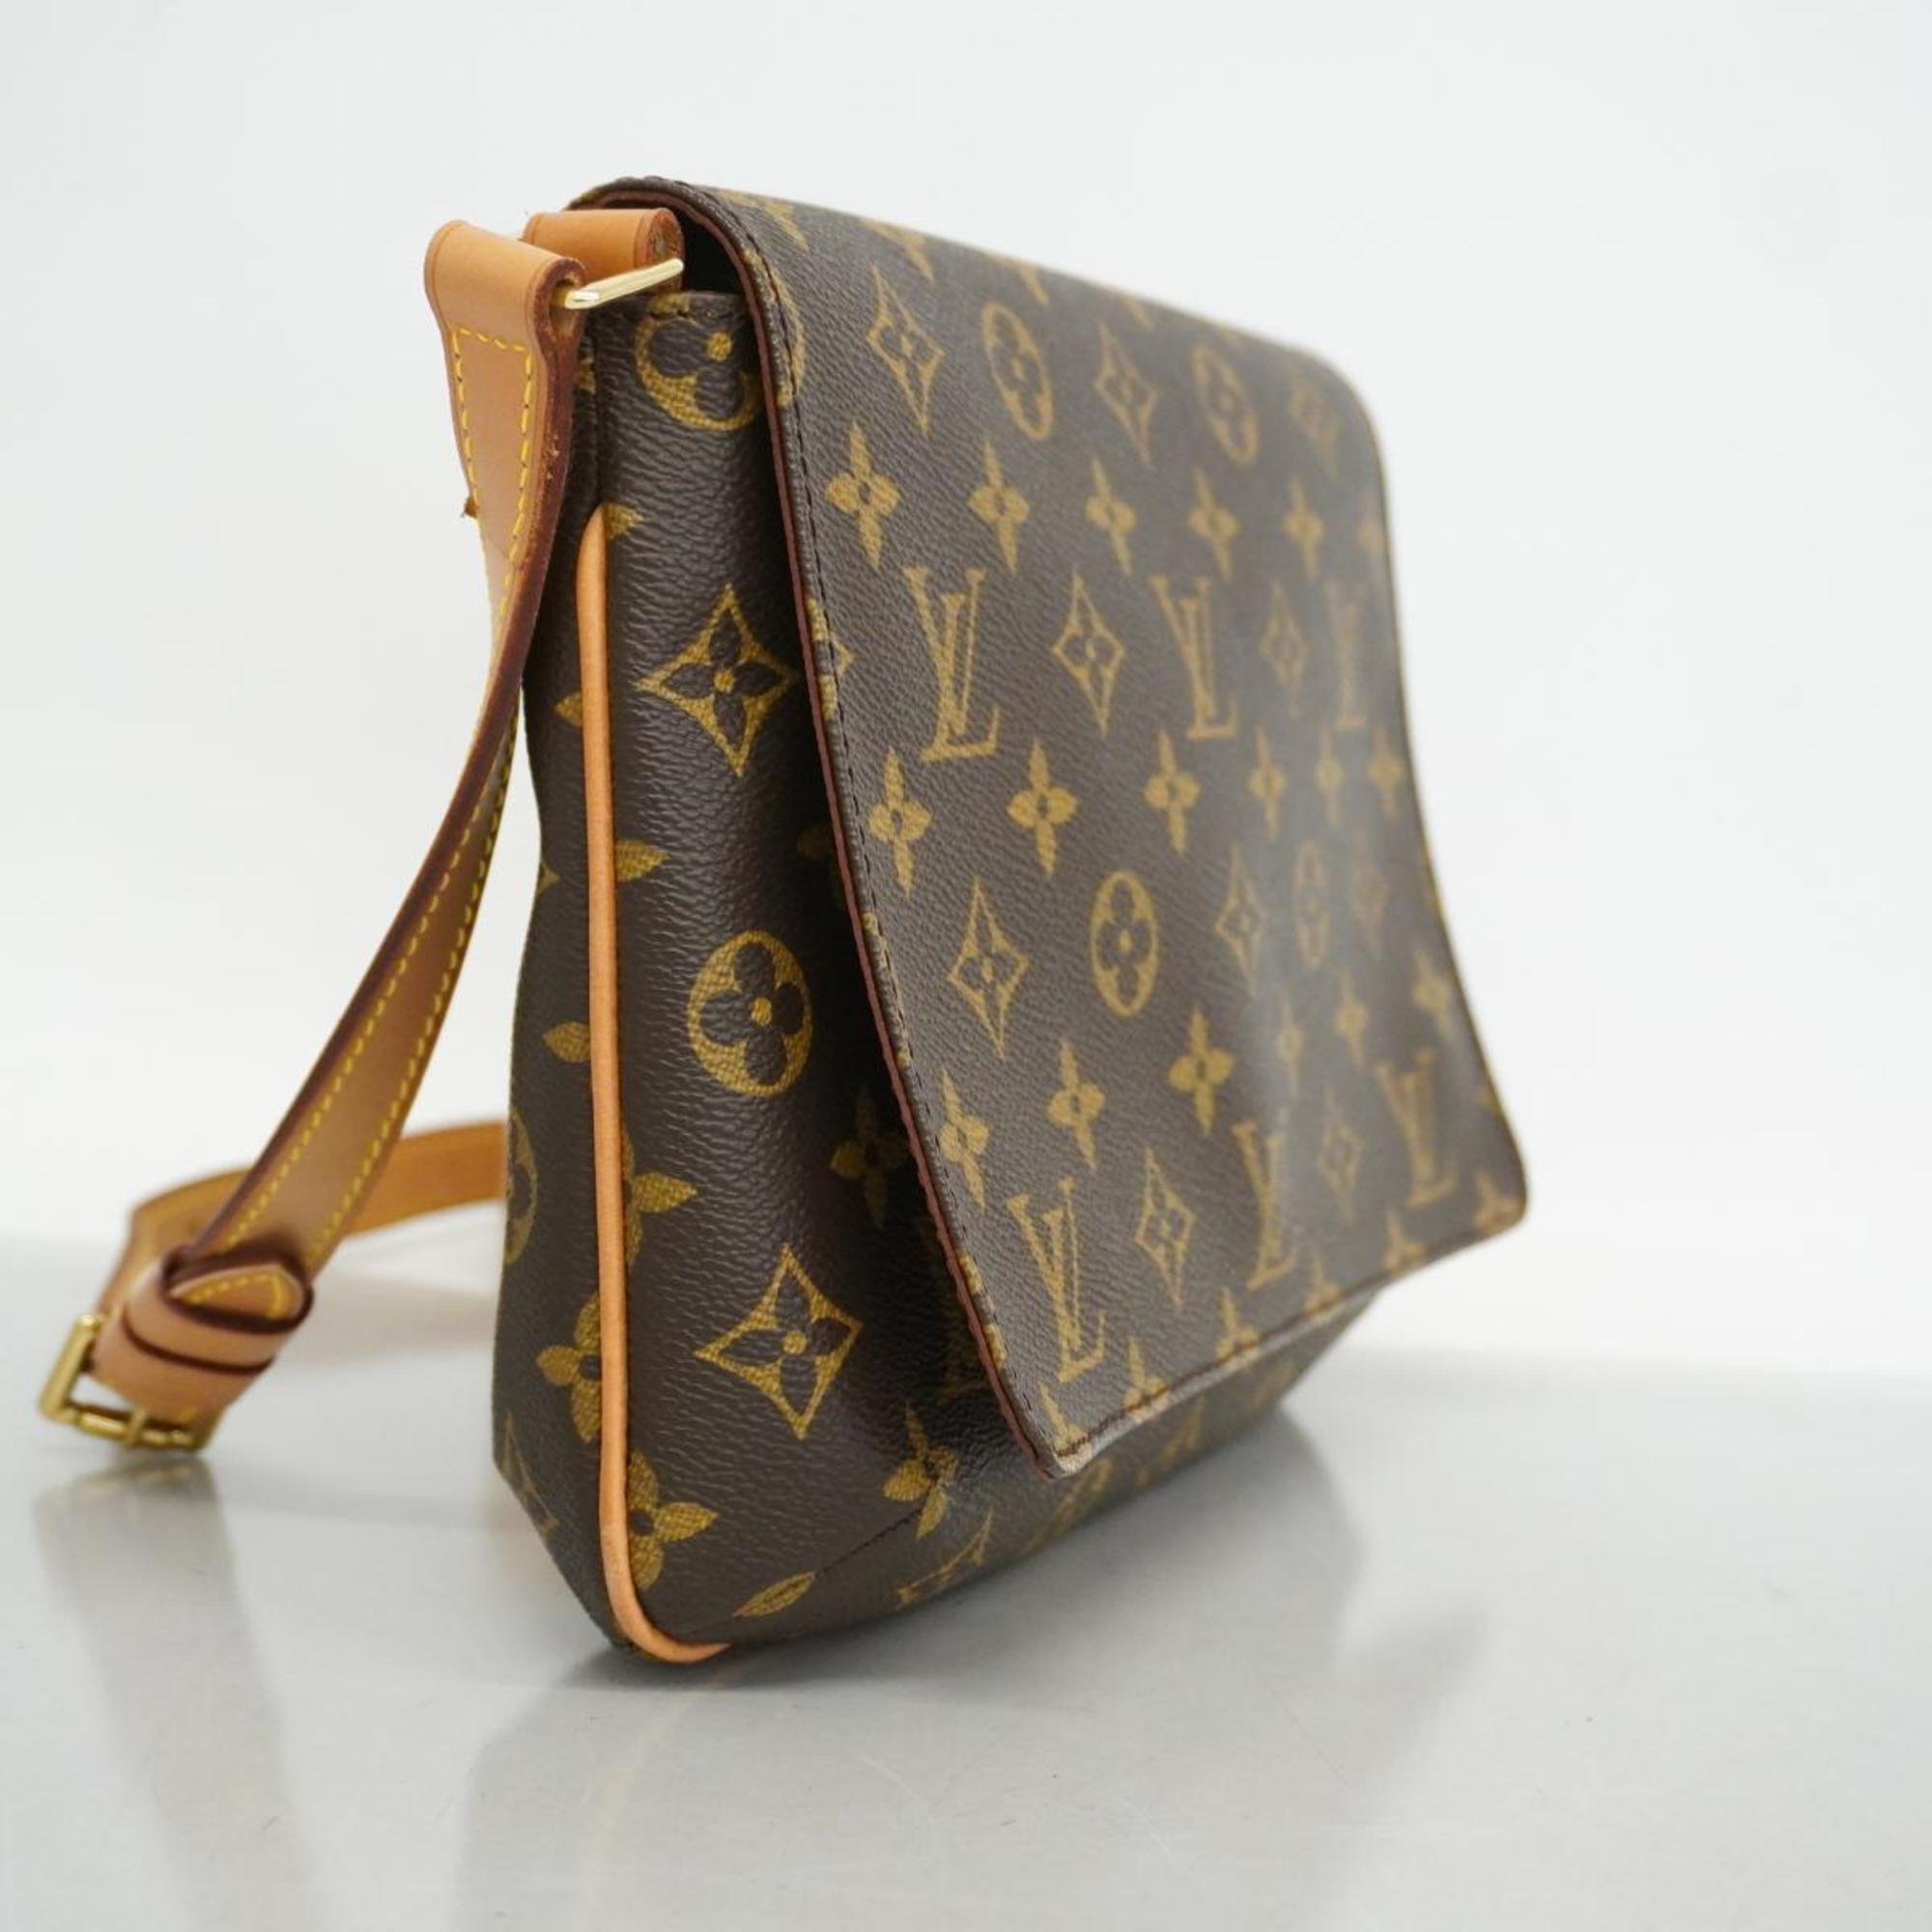 Louis Vuitton Shoulder Bag Monogram Musette Tango Short Strap M51257 Brown Women's